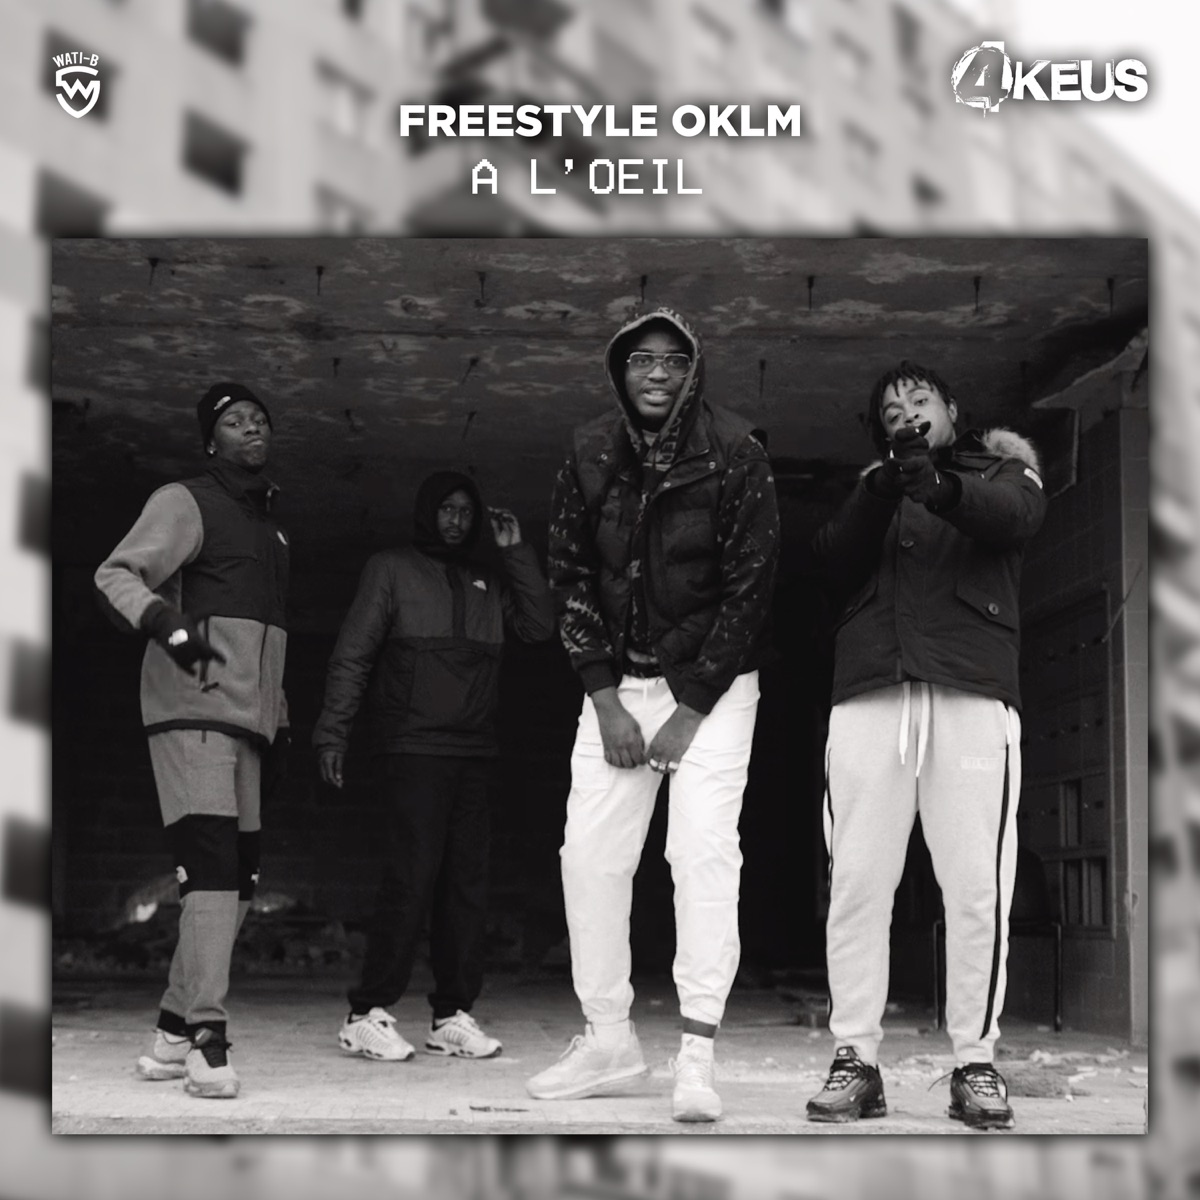 A l'œil (Freestyle OKLM) - Single – Album par 4Keus – Apple Music